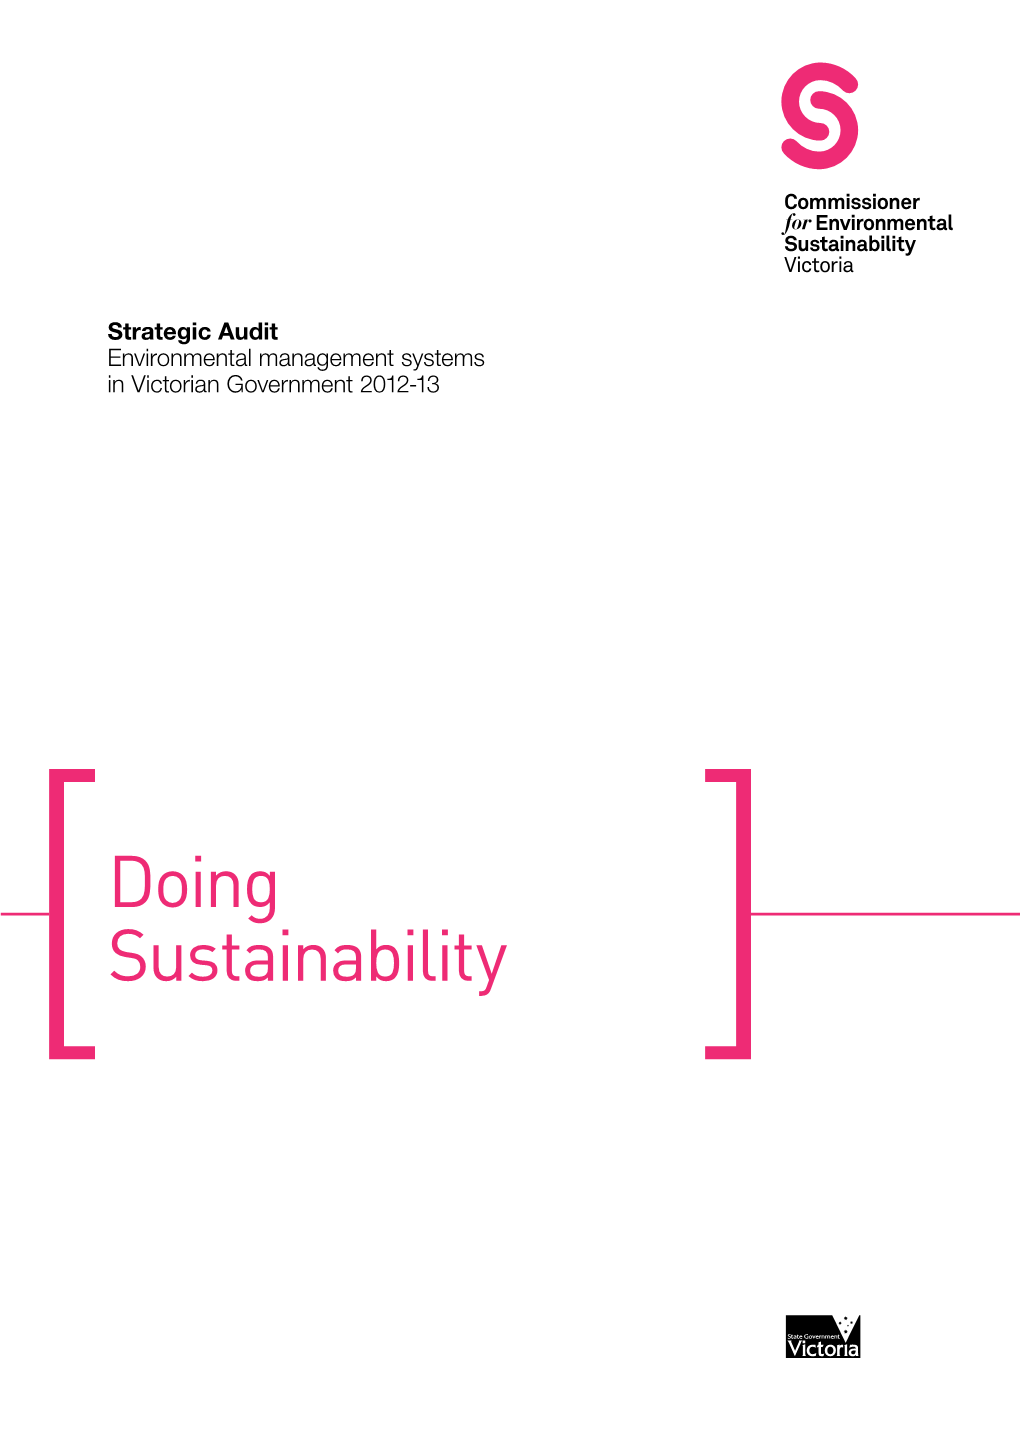 Doing Sustainability